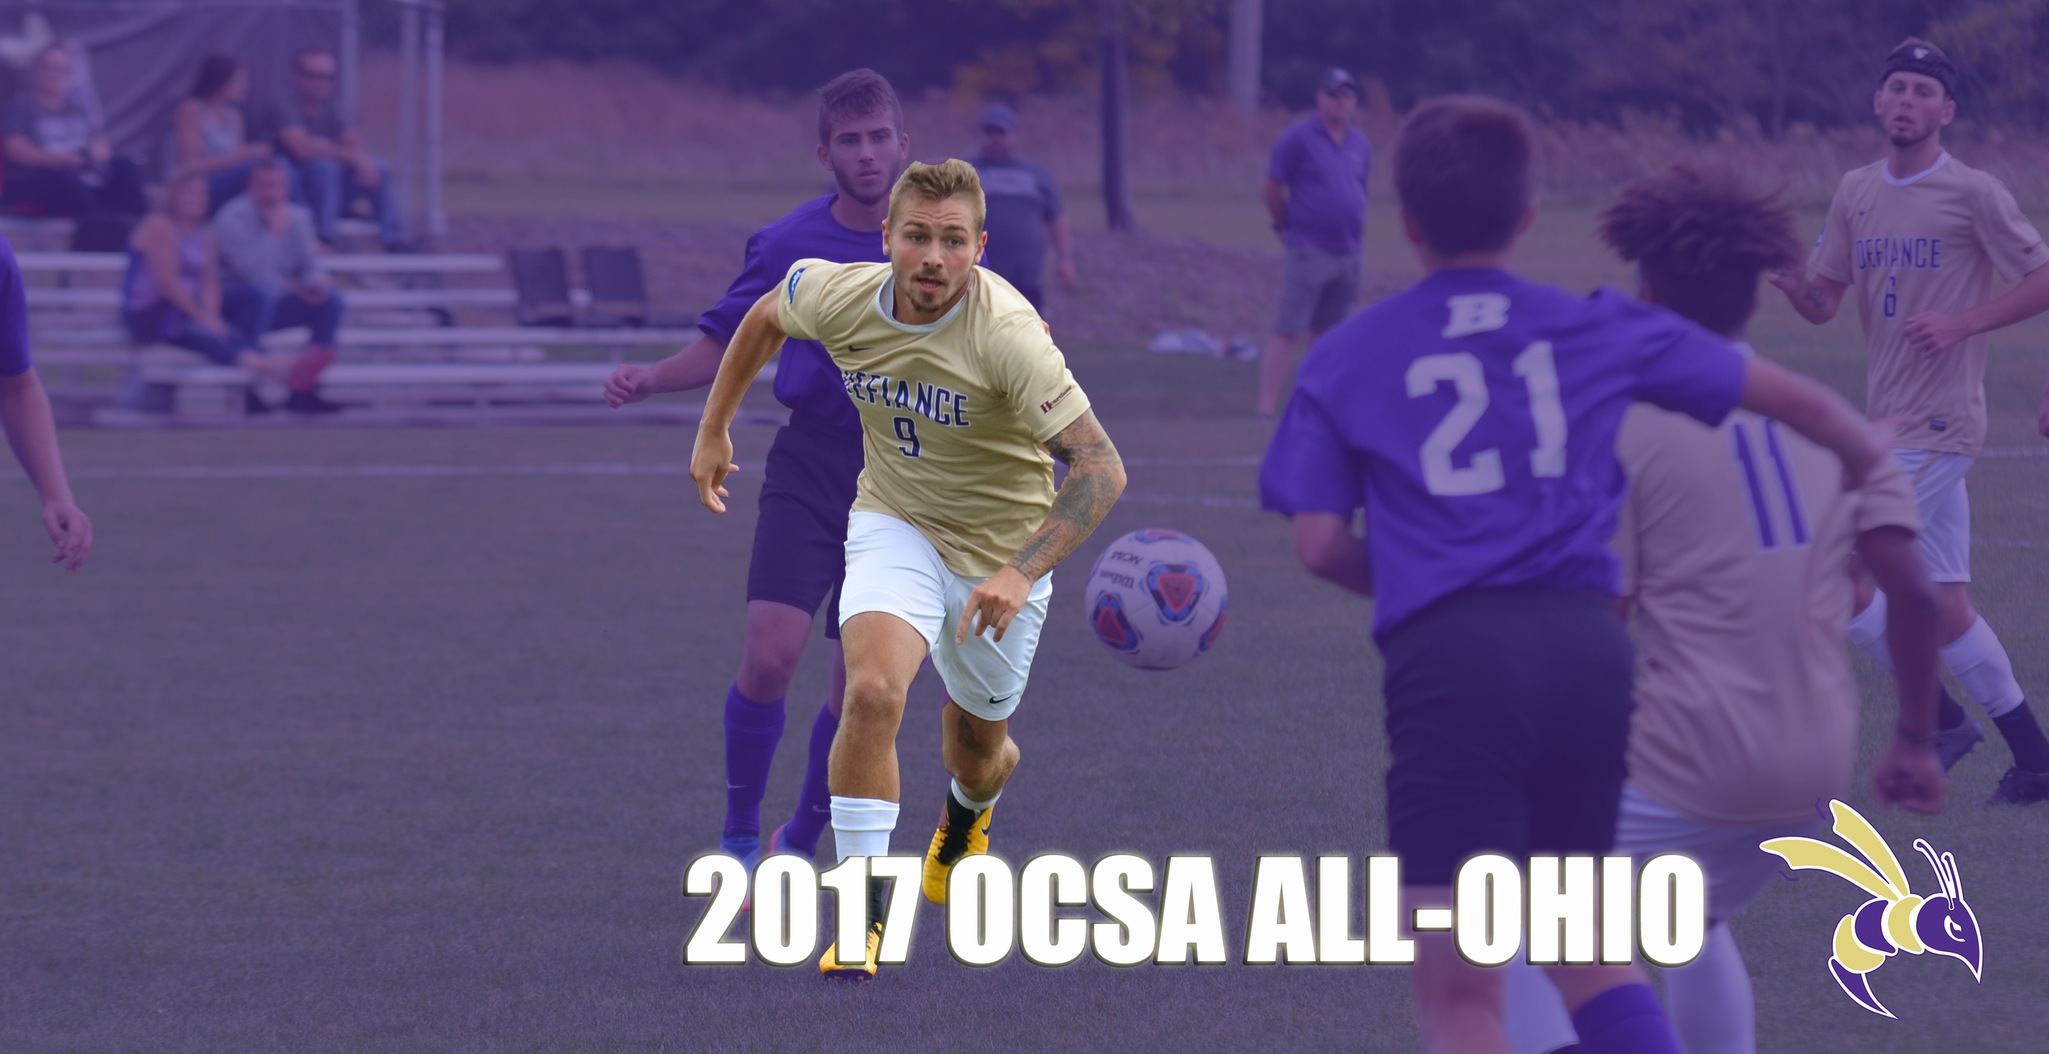 Meister Named OCSA All-Ohio